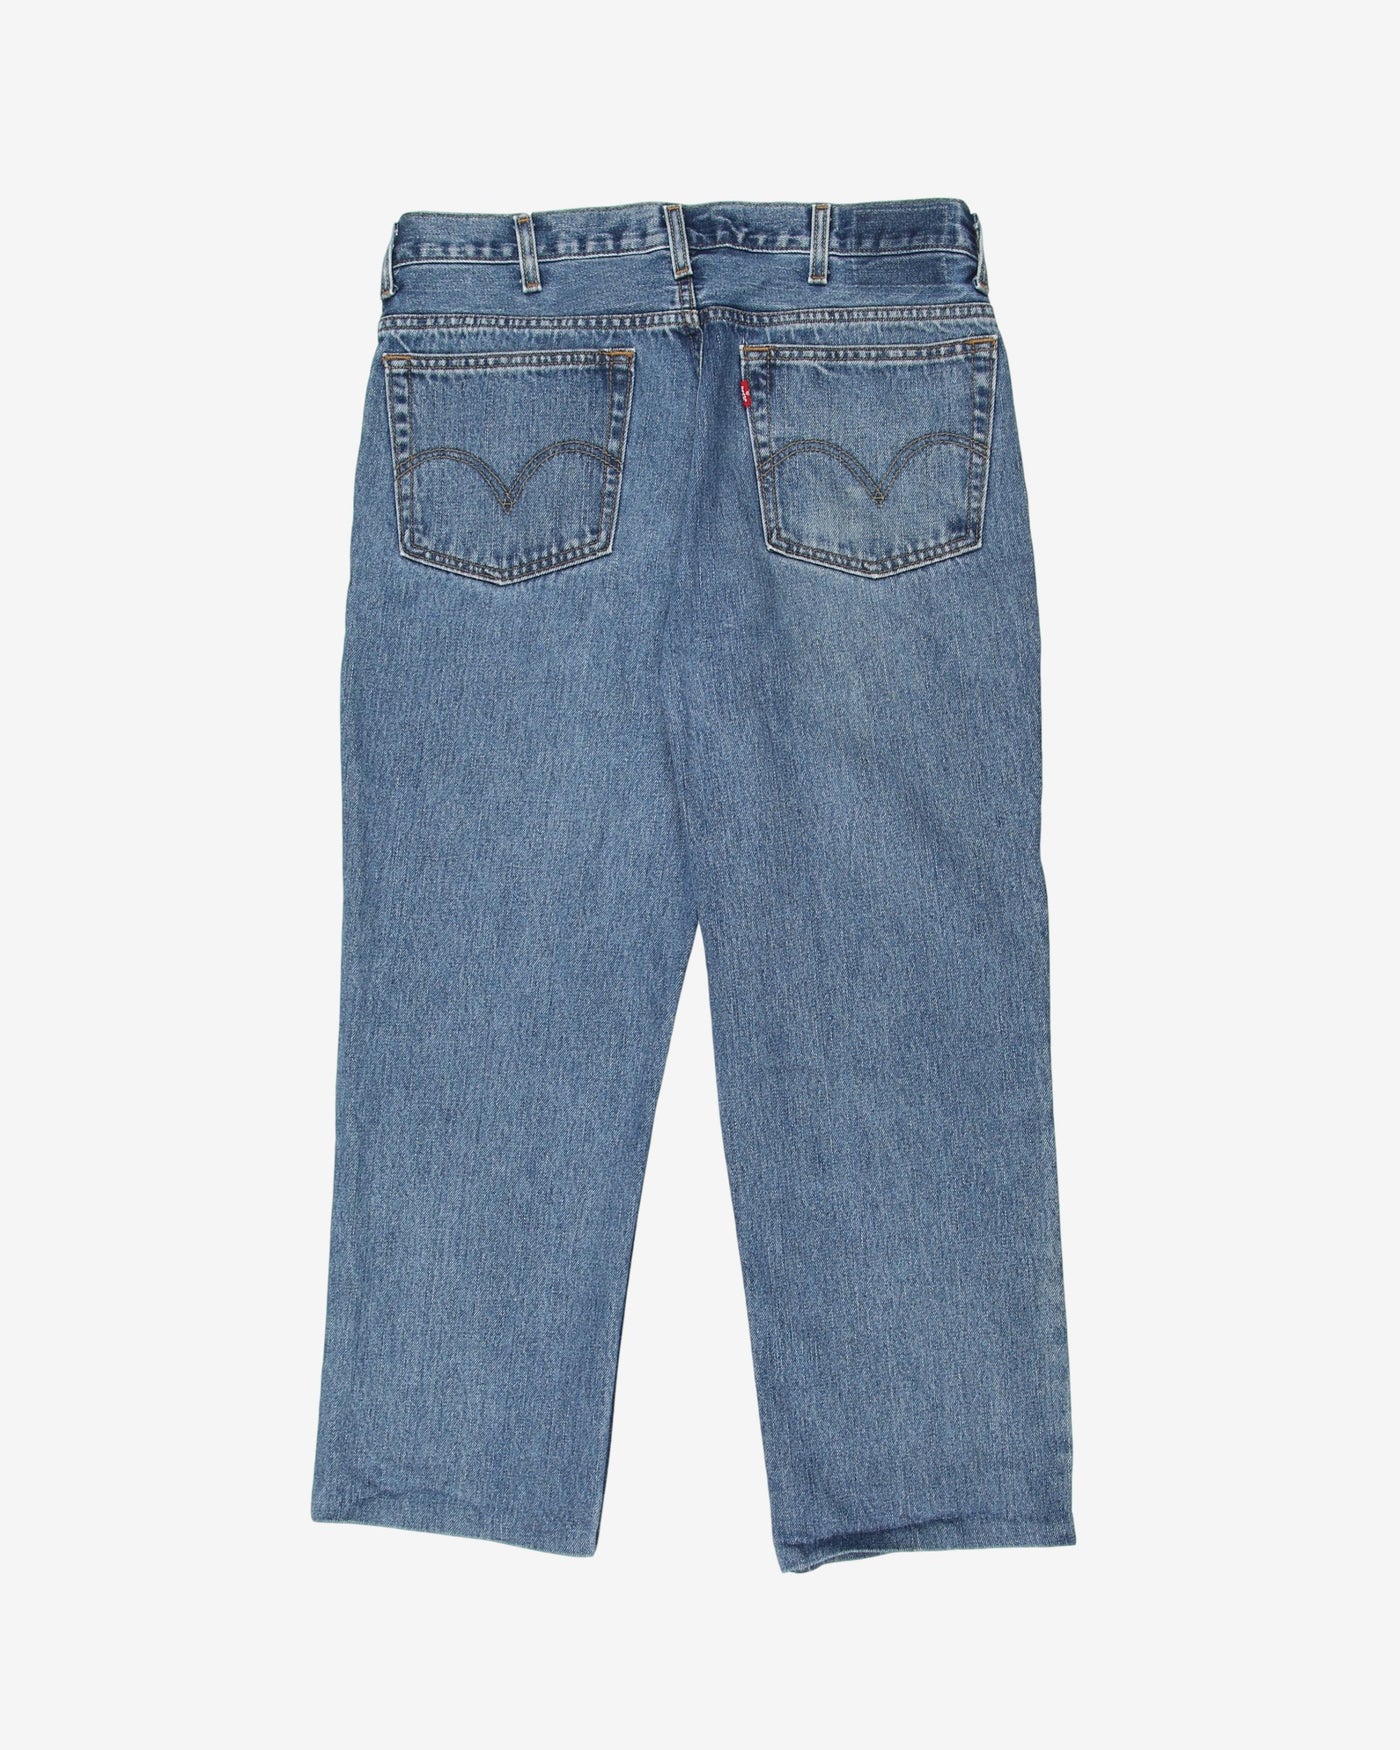 Levis vintage medium wash blue jeans - W33 L25